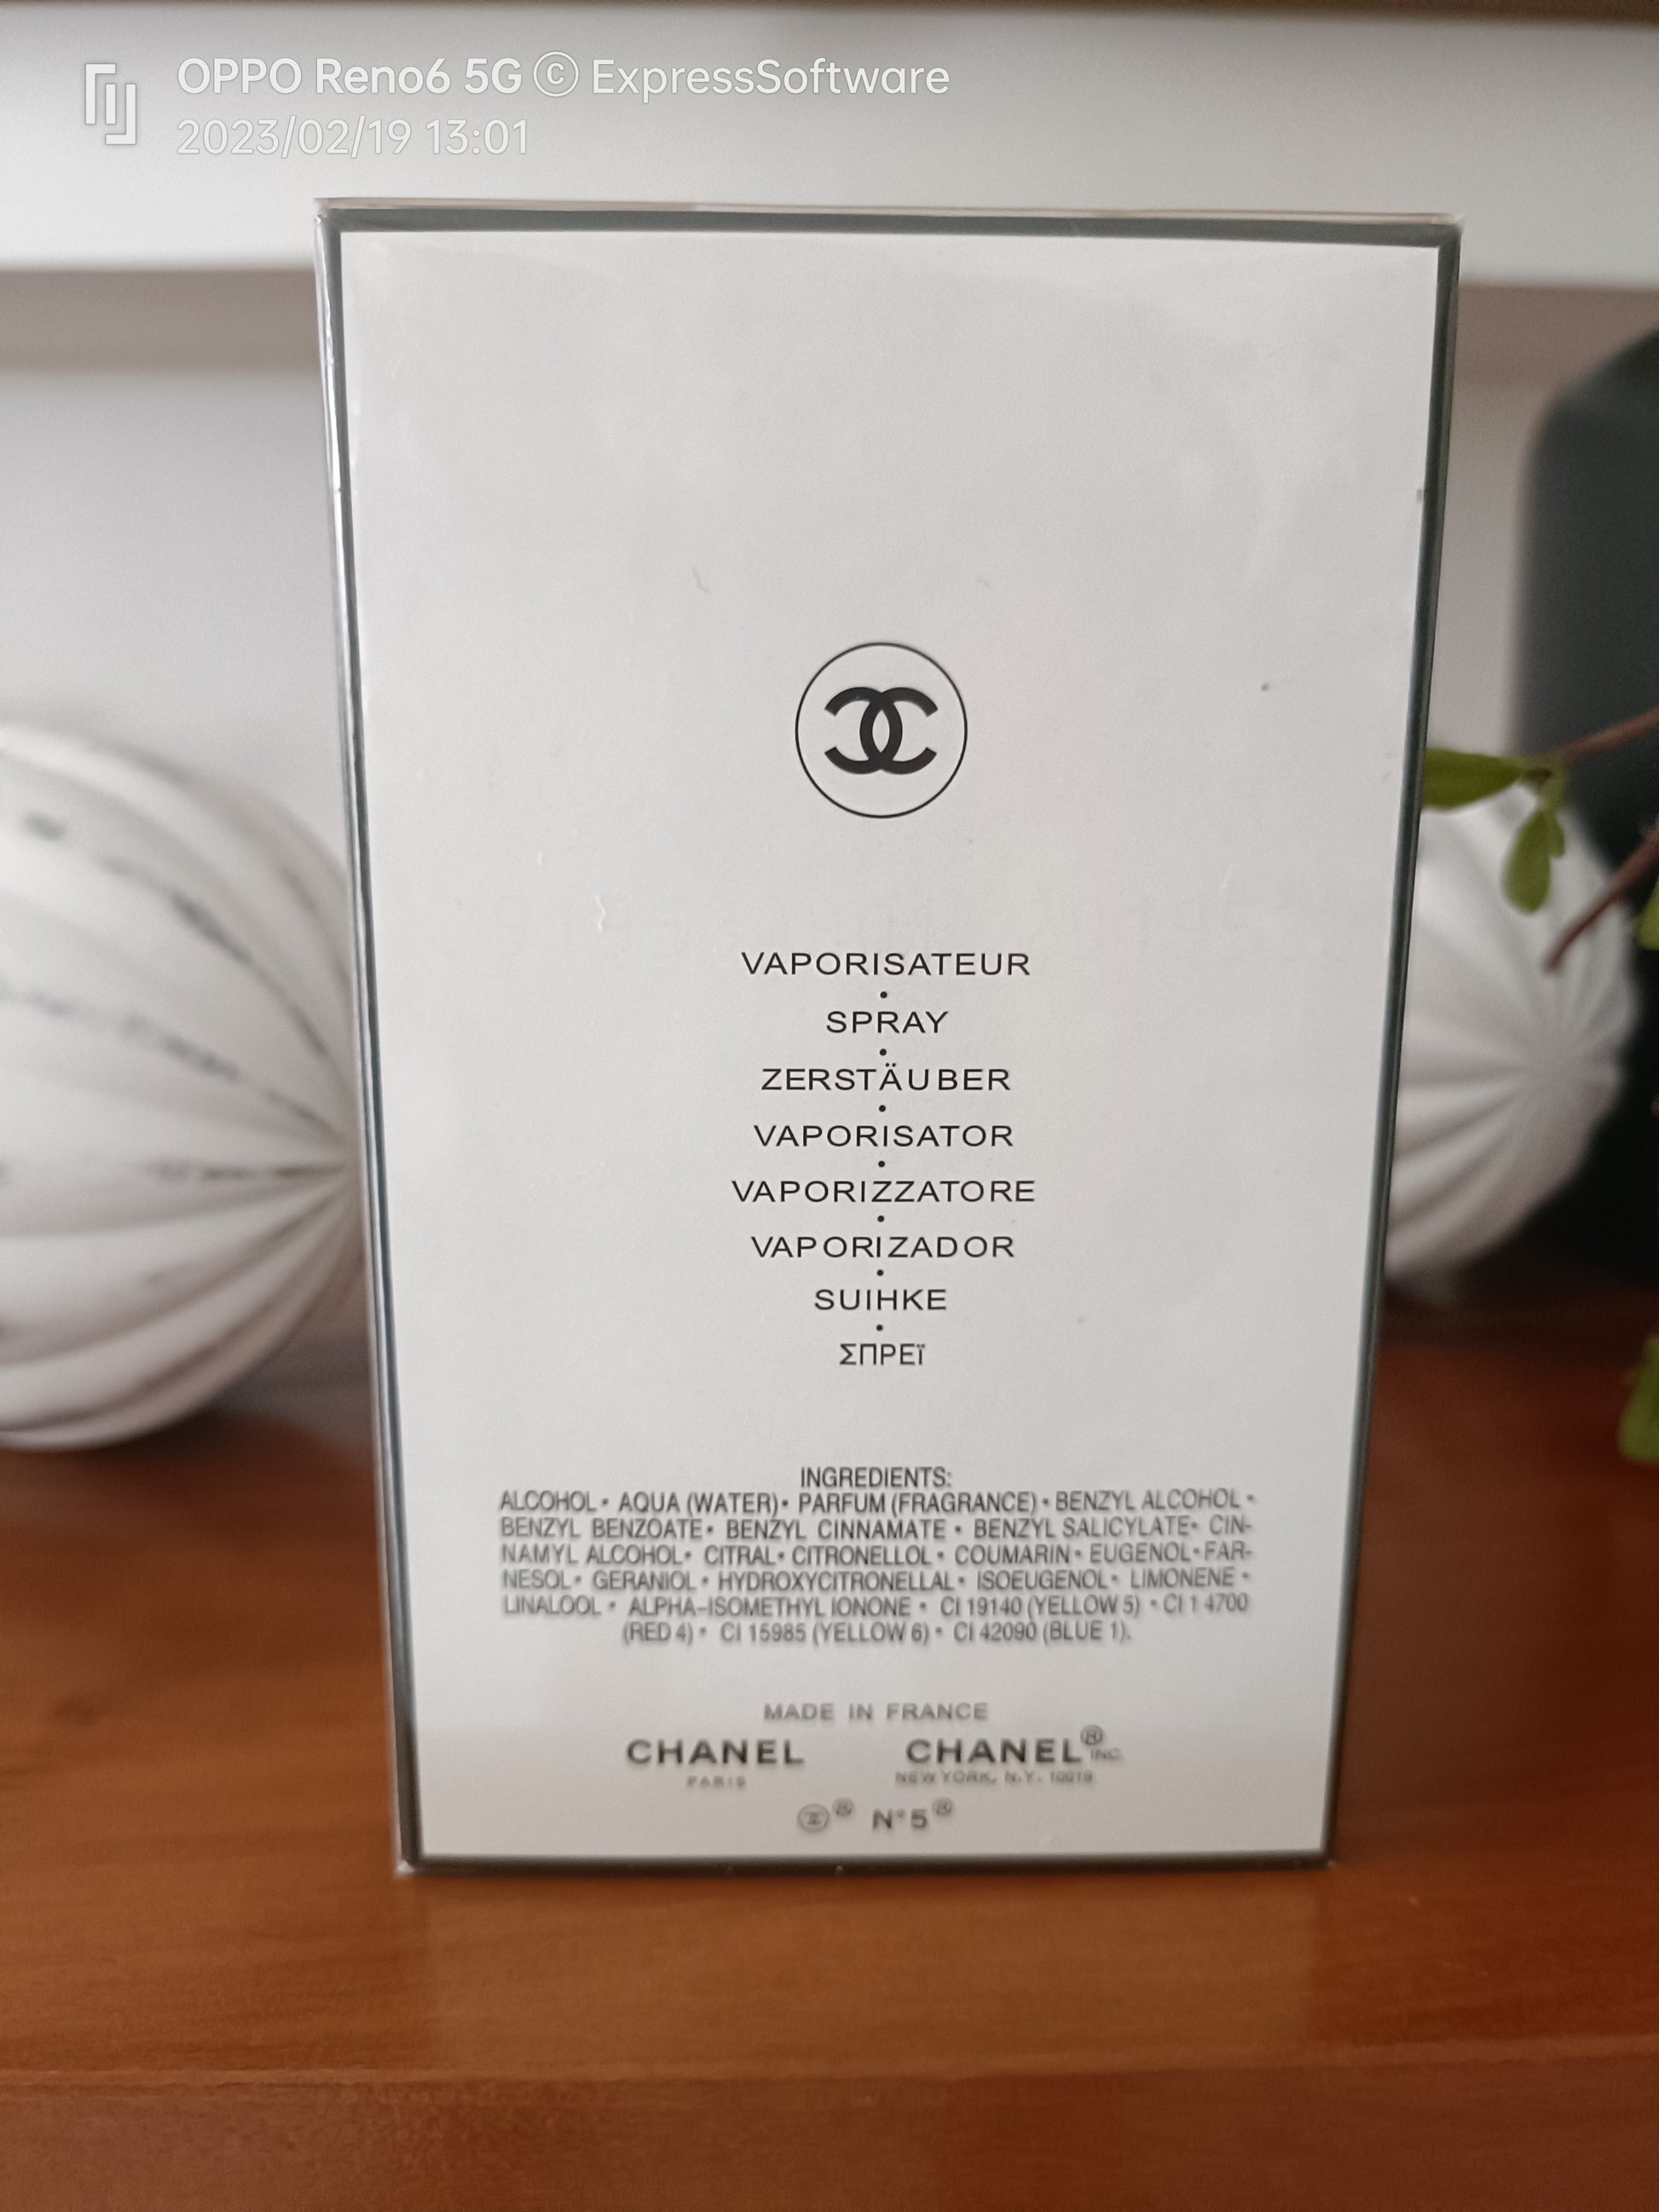 Chanel No 5 Eau de Parfum Chanel for women Fragrances 100ml perfume